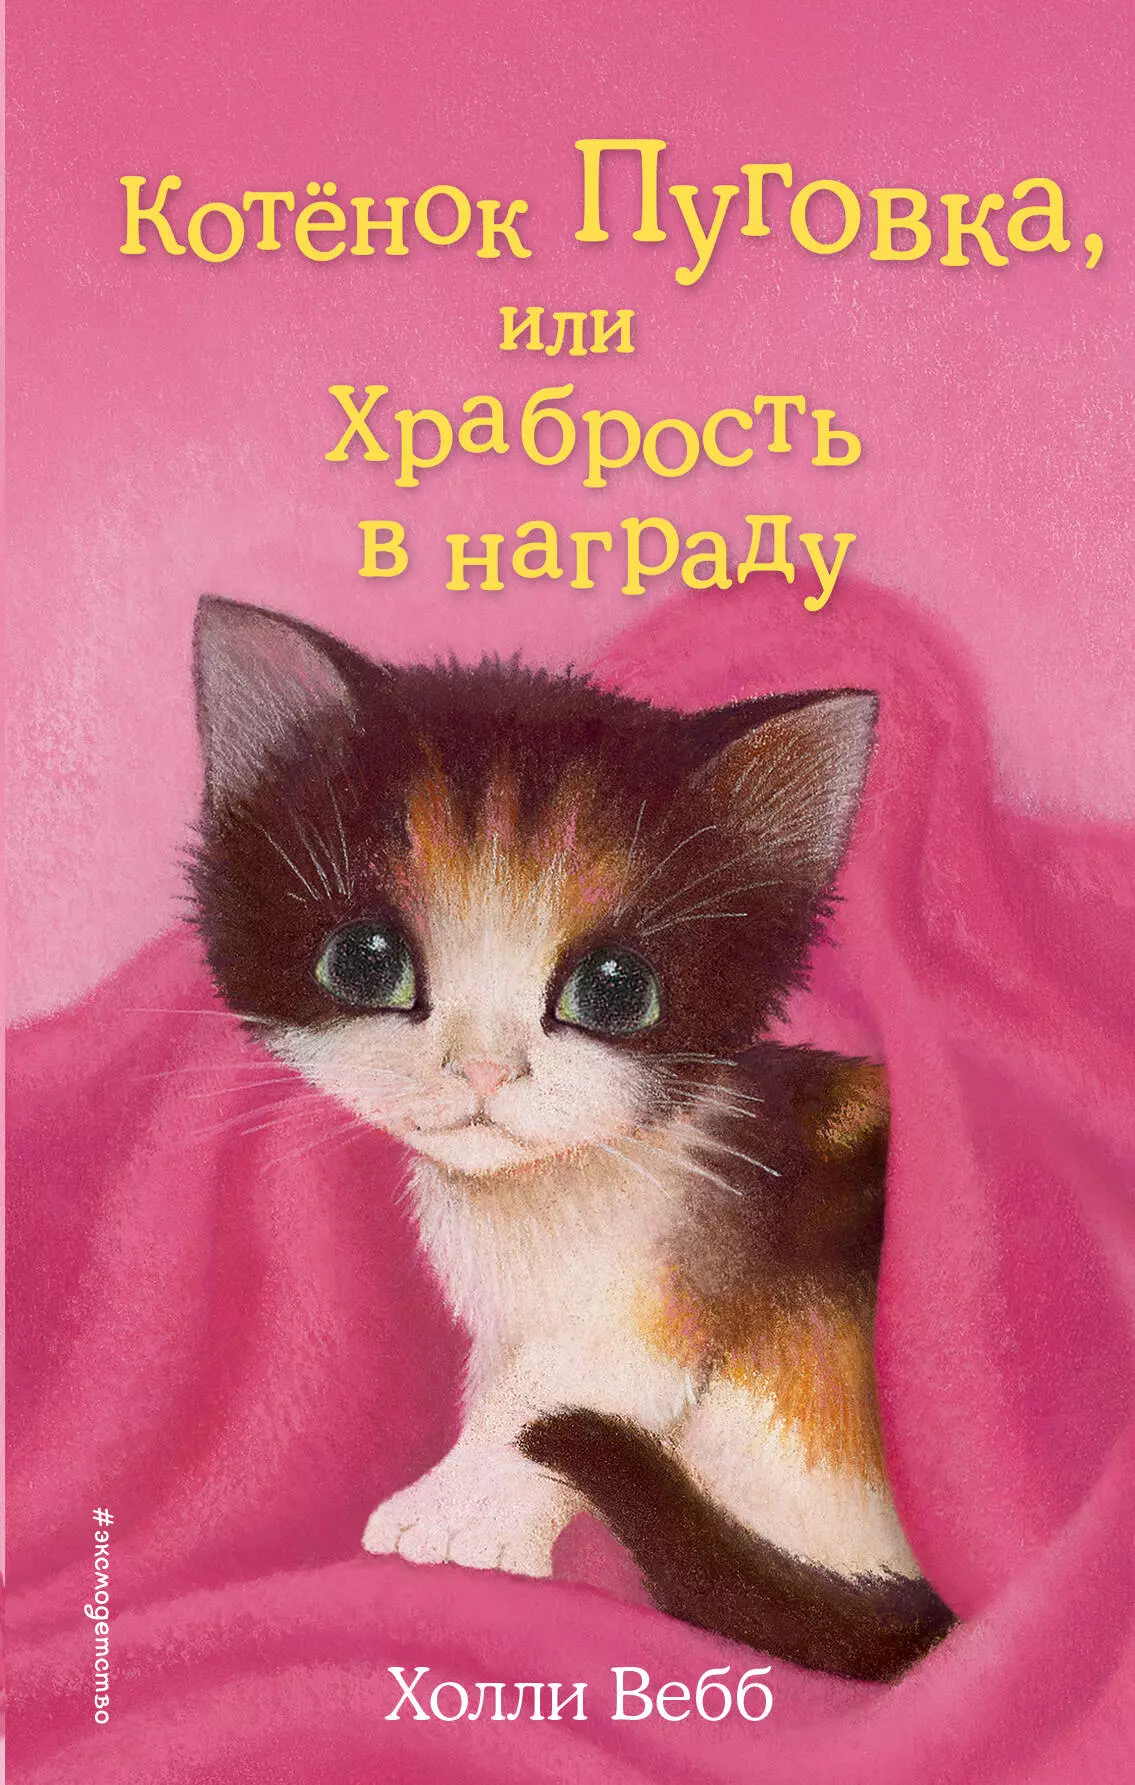 Котёнок Пуговка, или Храбрость в награду: повесть вебб холли котенок пуговка или храбрость в награду